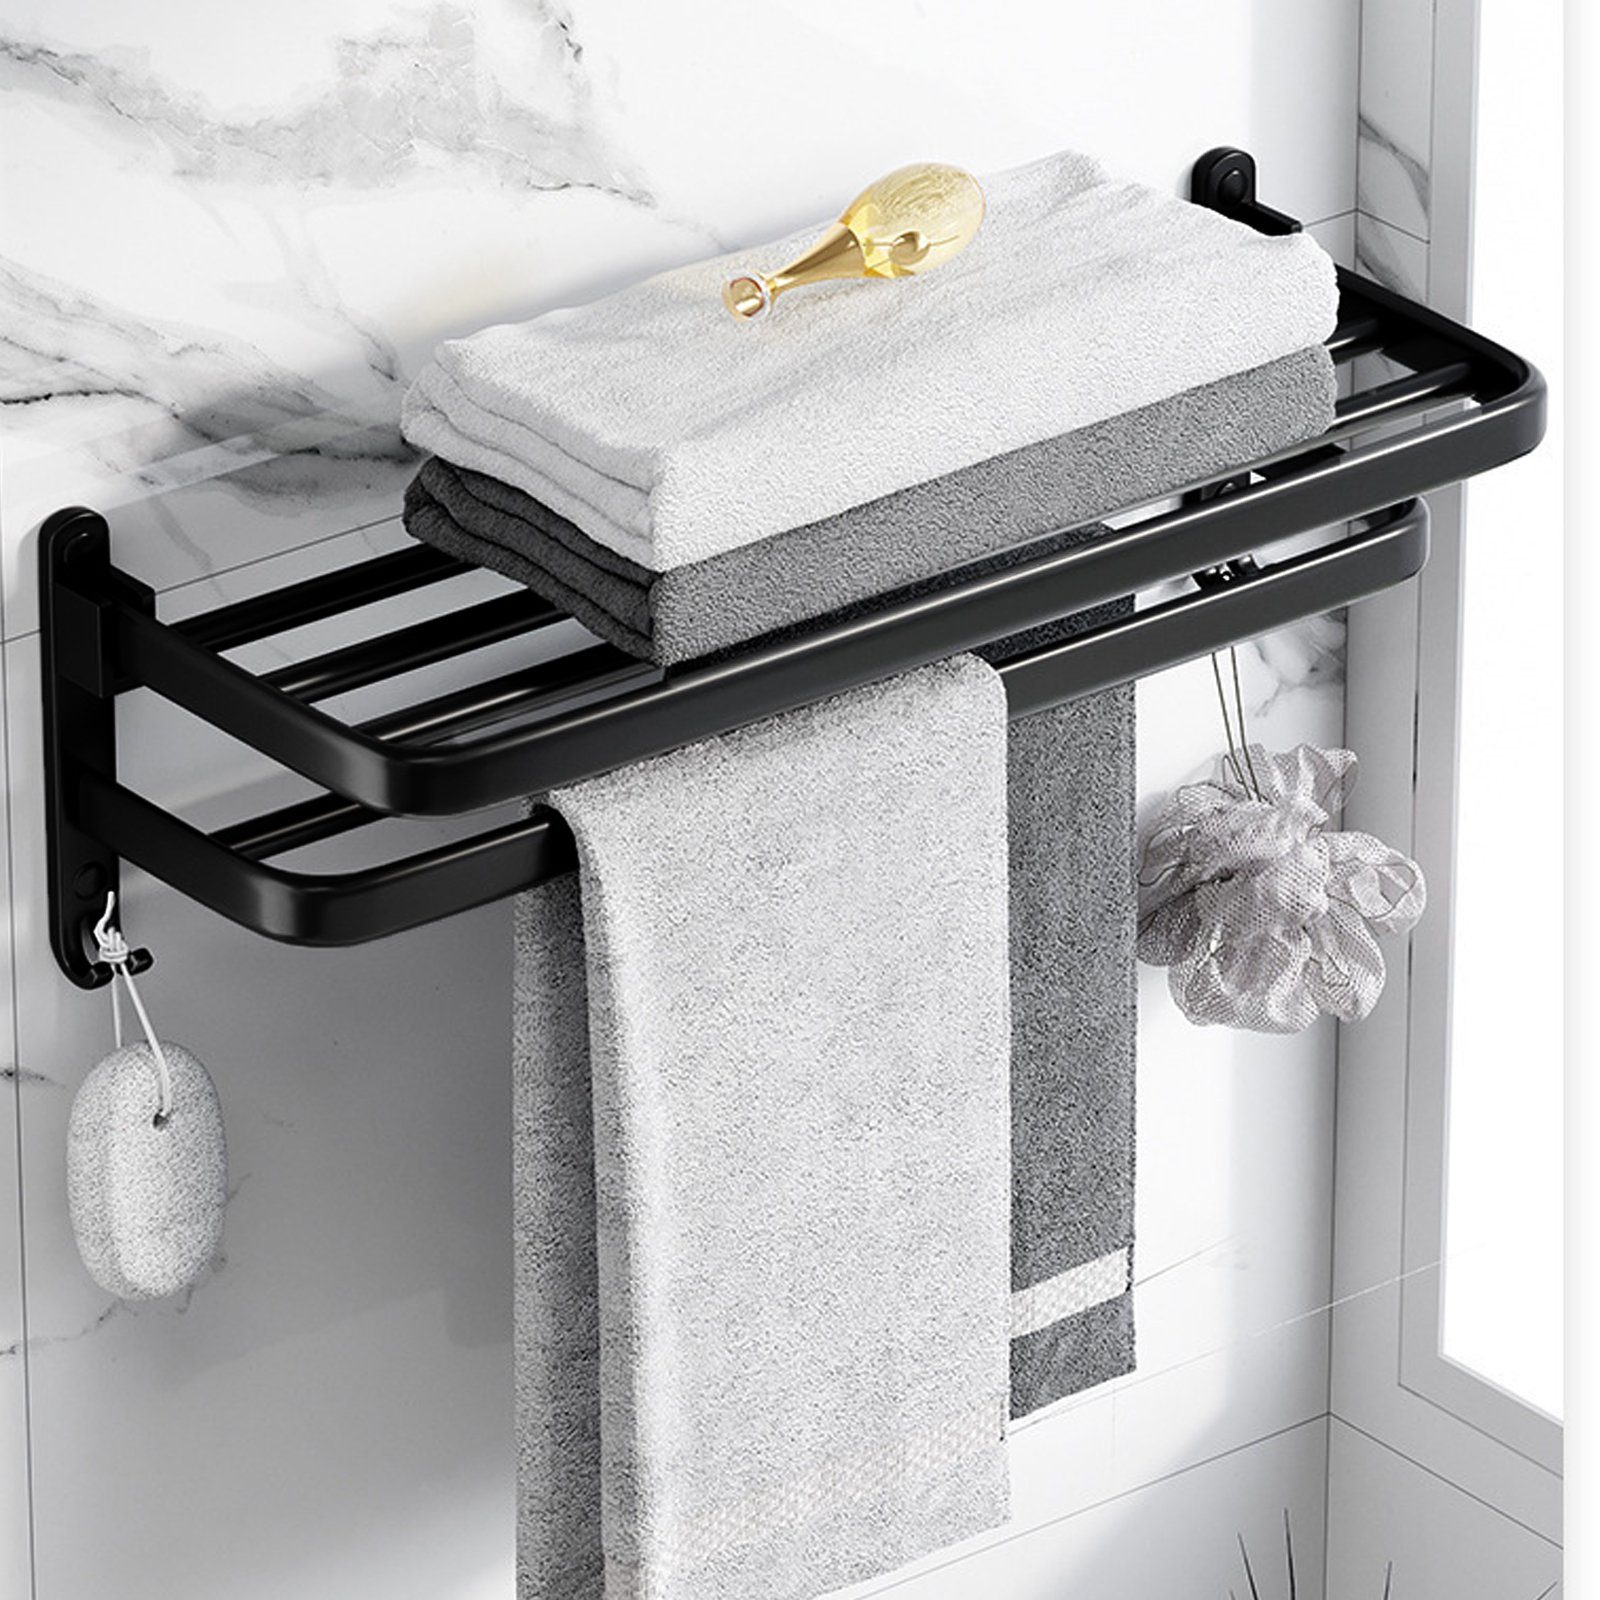 Aoucheni Doppelhandtuchhalter Wandmontage Handtuchhalter ohne Bohren Bad mit 2 Handtuchstangen, befestigen ohne Bohren